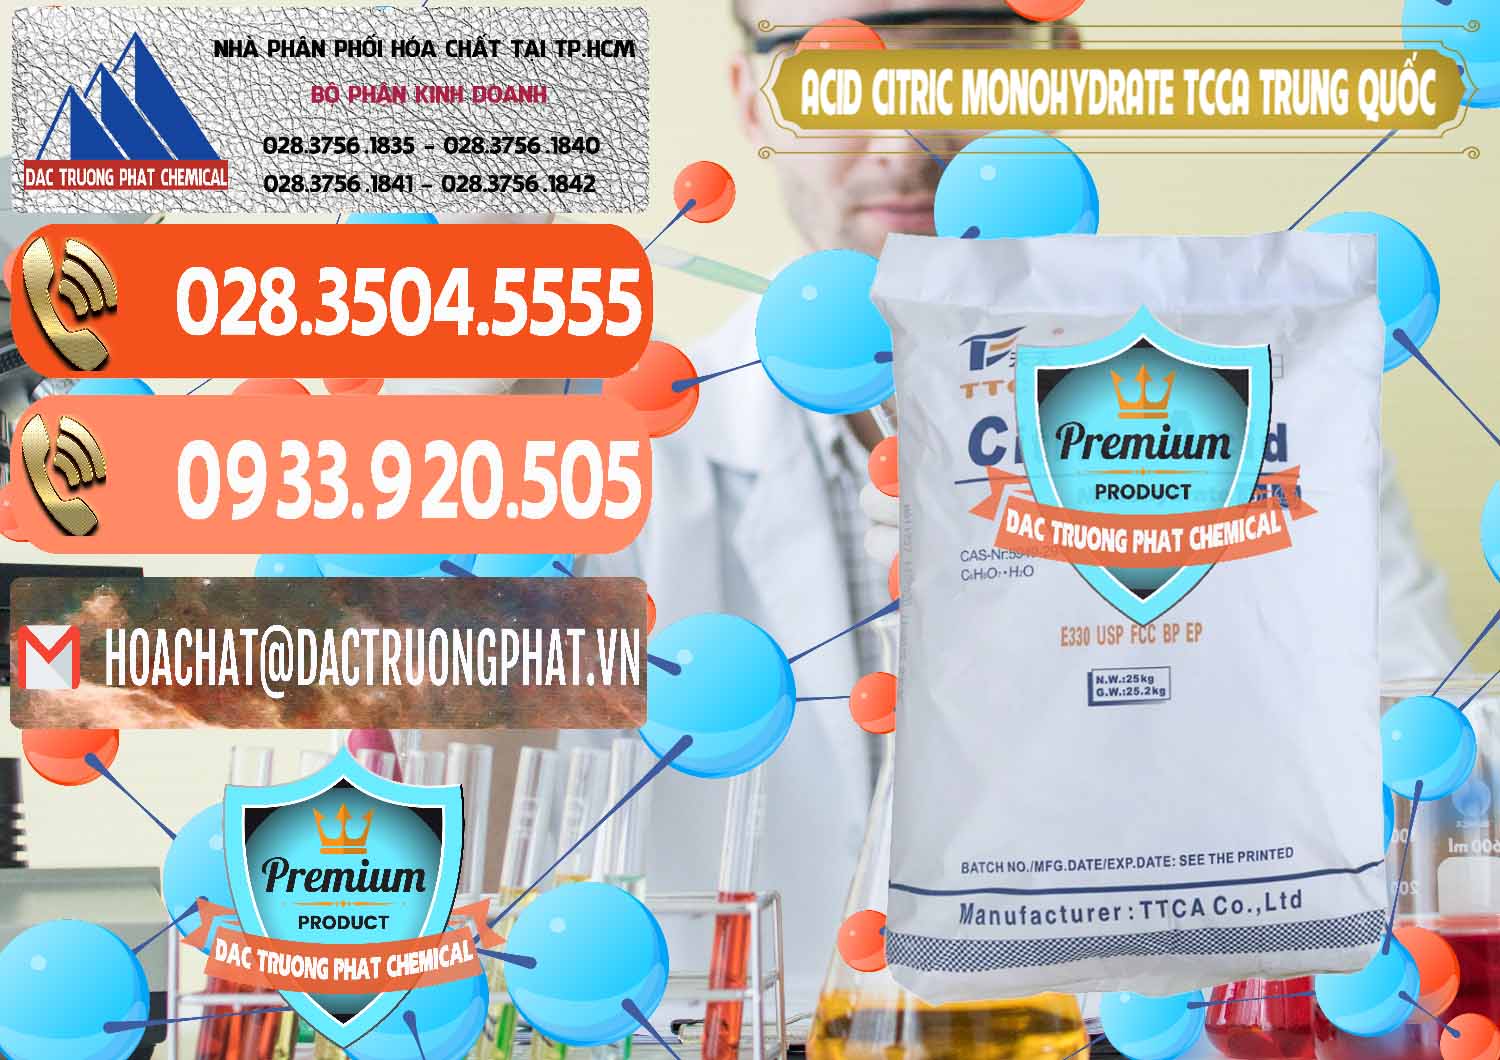 Cty chuyên bán và cung ứng Acid Citric - Axit Citric Monohydrate TCCA Trung Quốc China - 0441 - Nhập khẩu _ cung cấp hóa chất tại TP.HCM - hoachatmientay.com